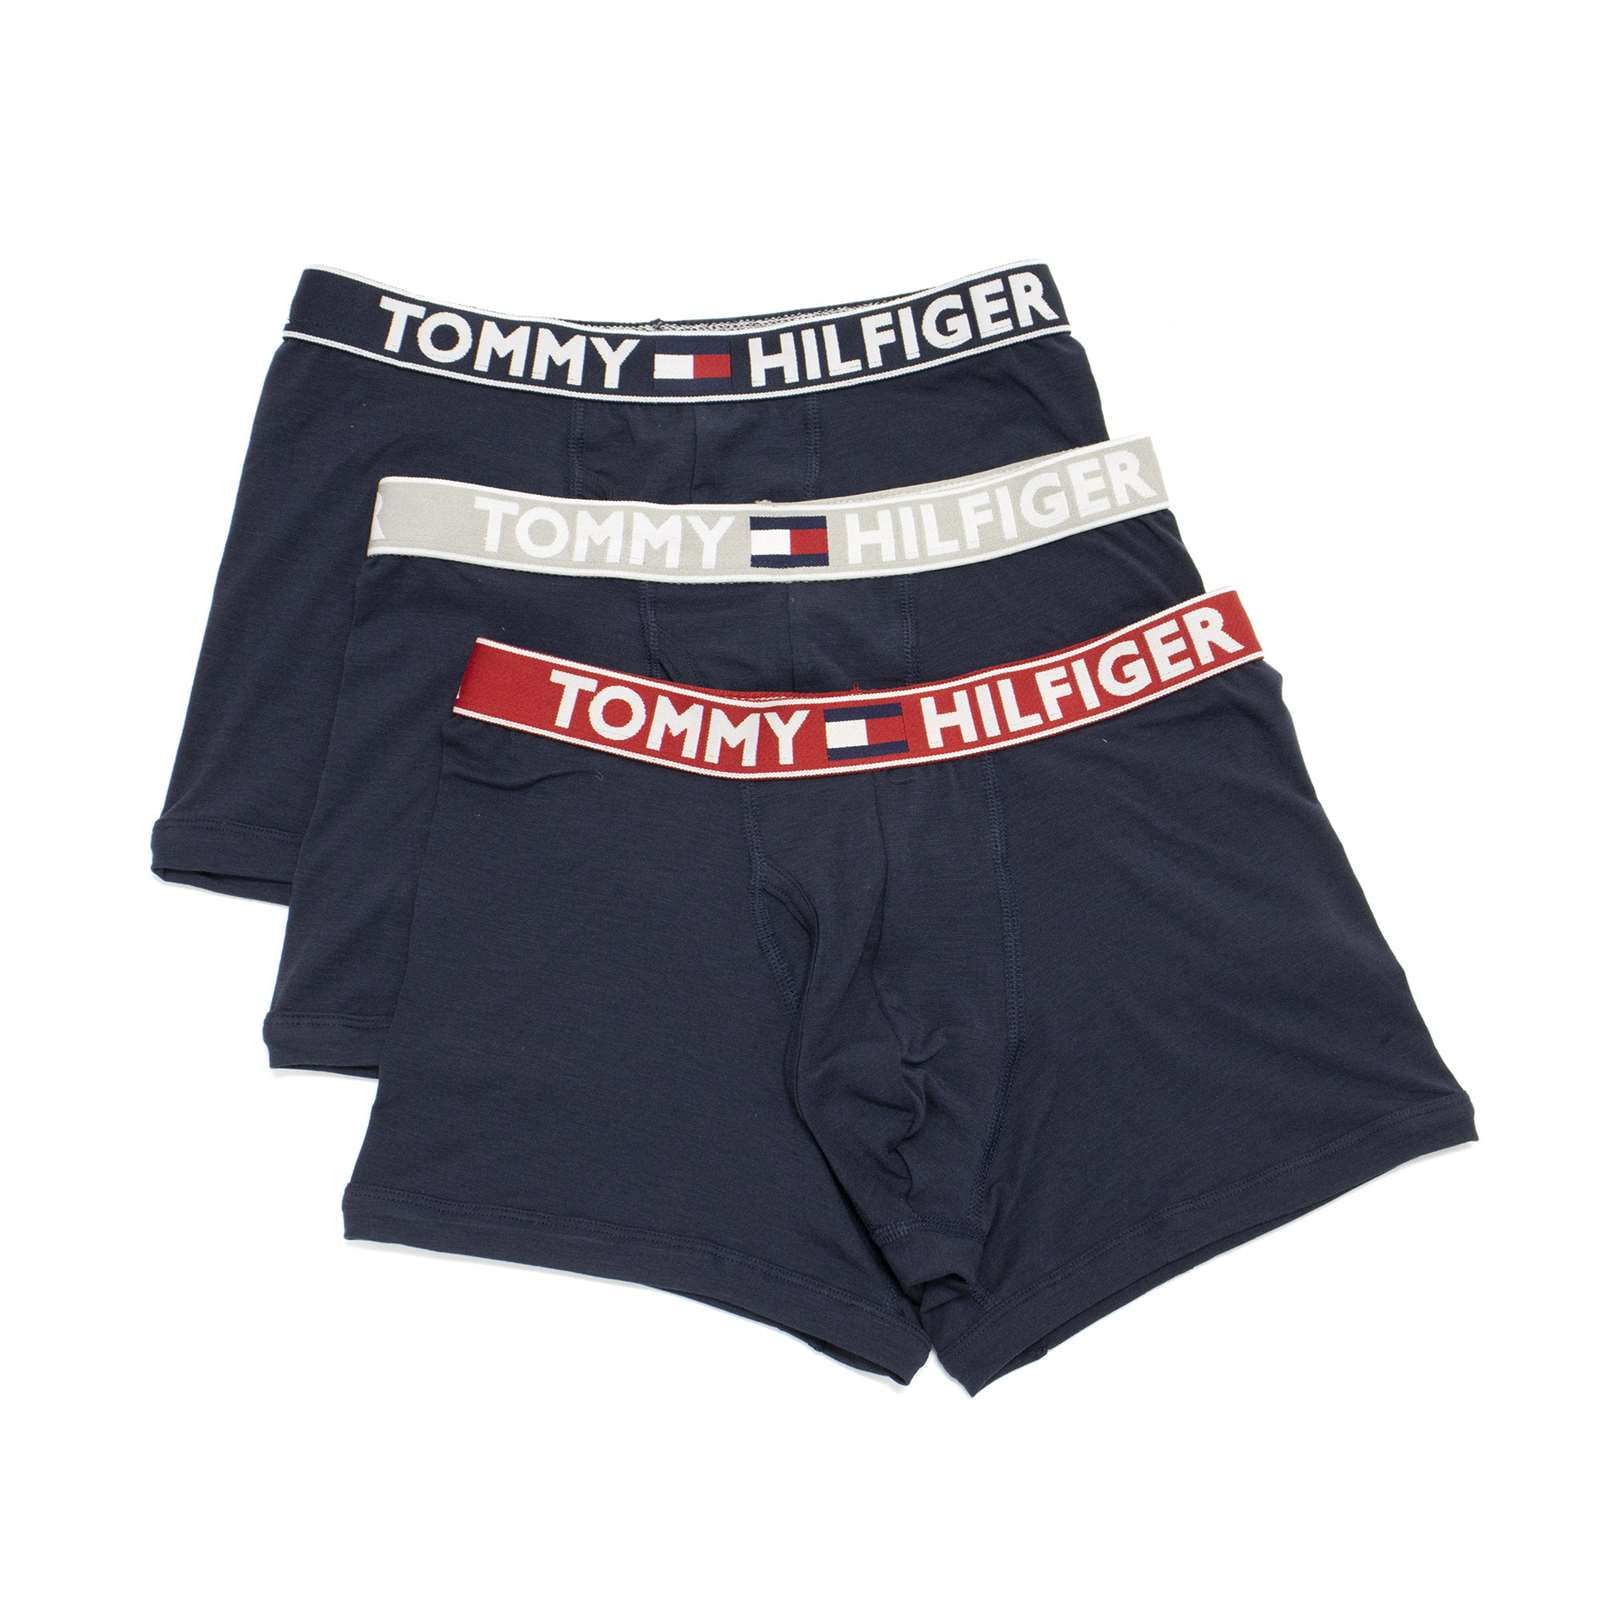 Tommy Hilfiger Men\'s Comfort 2.0 Dark Trunks, Navy,M - Pack 3 US